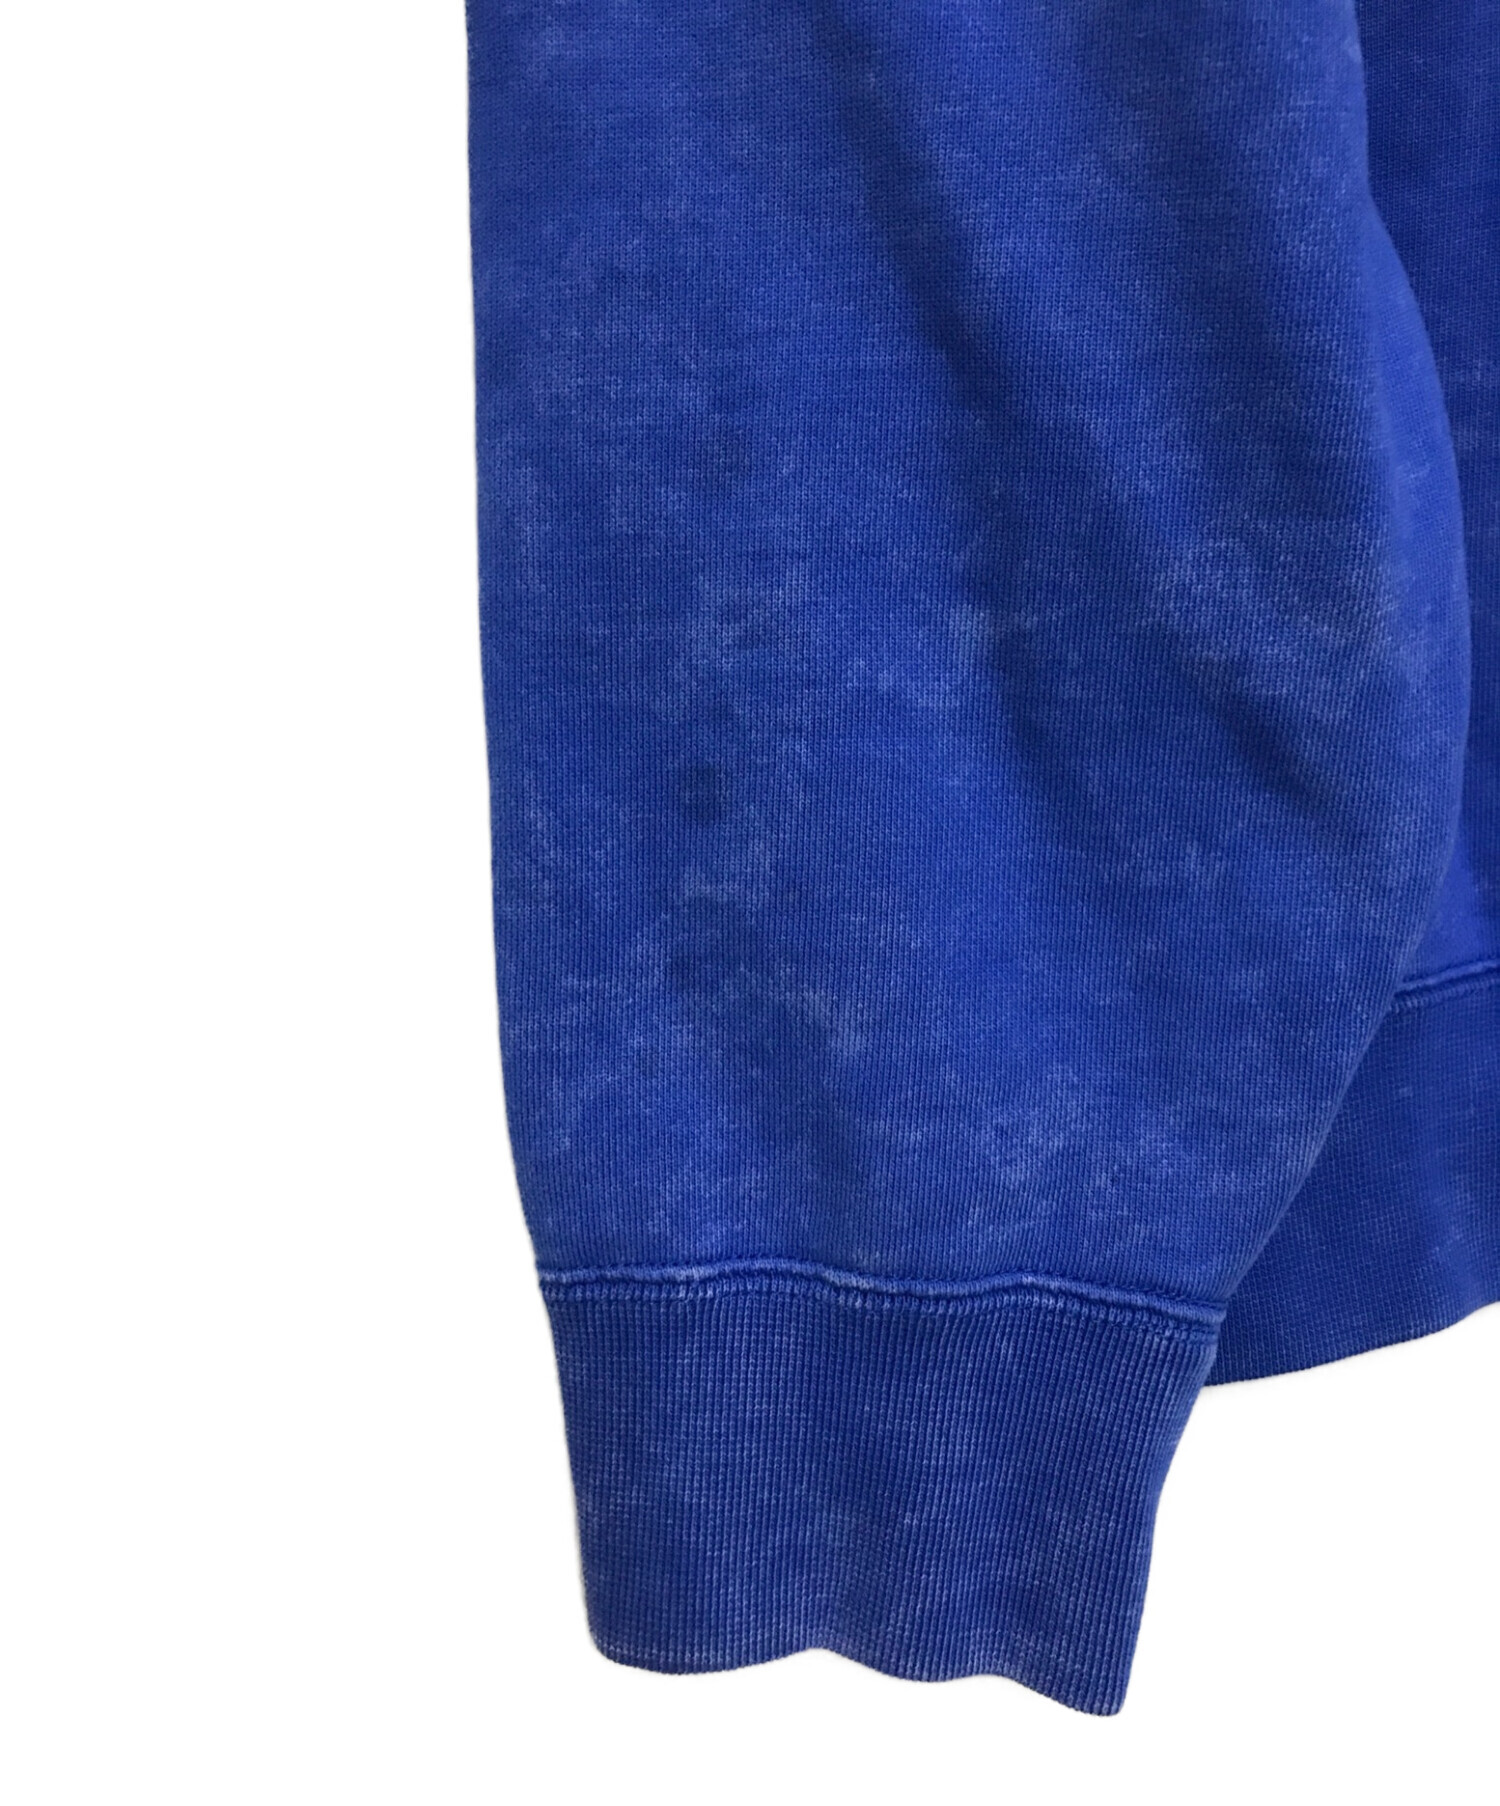 ナイキ ×ステューシー STUSSY  Acid Wash Fleece Crew DR4024-480 ウォッシュ加工ロゴ刺繍スウェット メンズ XS